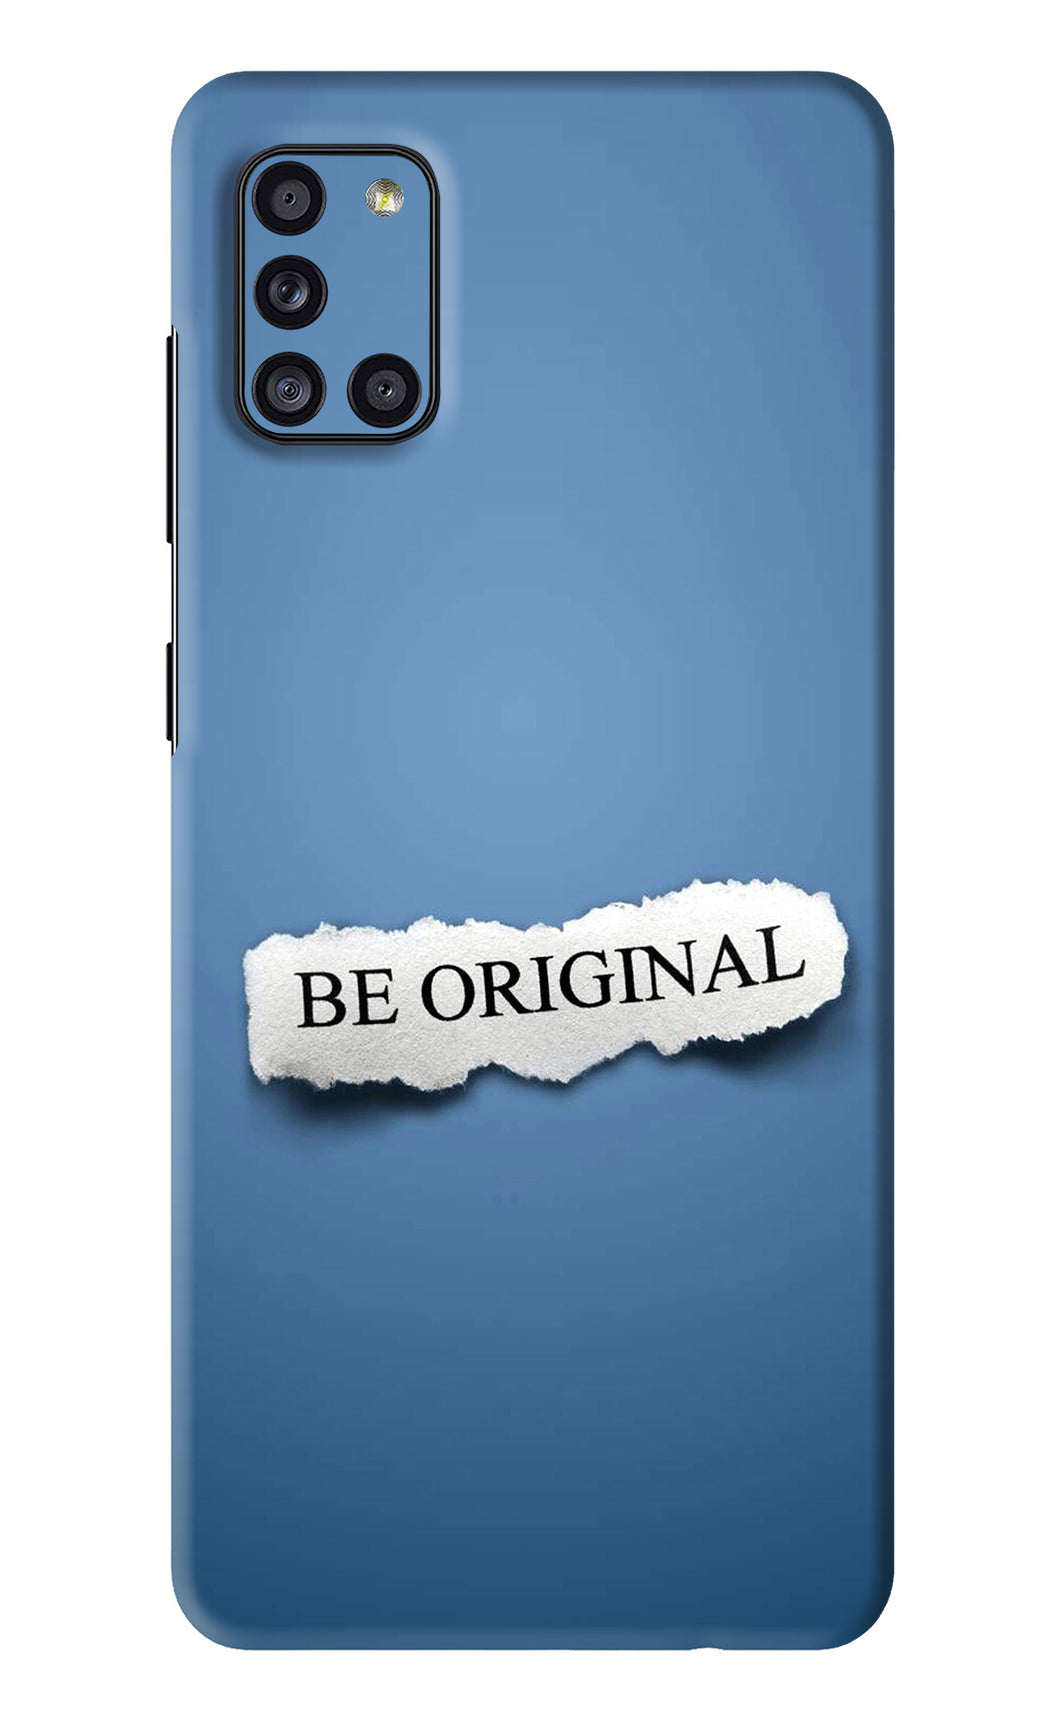 Be Original Samsung Galaxy A31 Back Skin Wrap